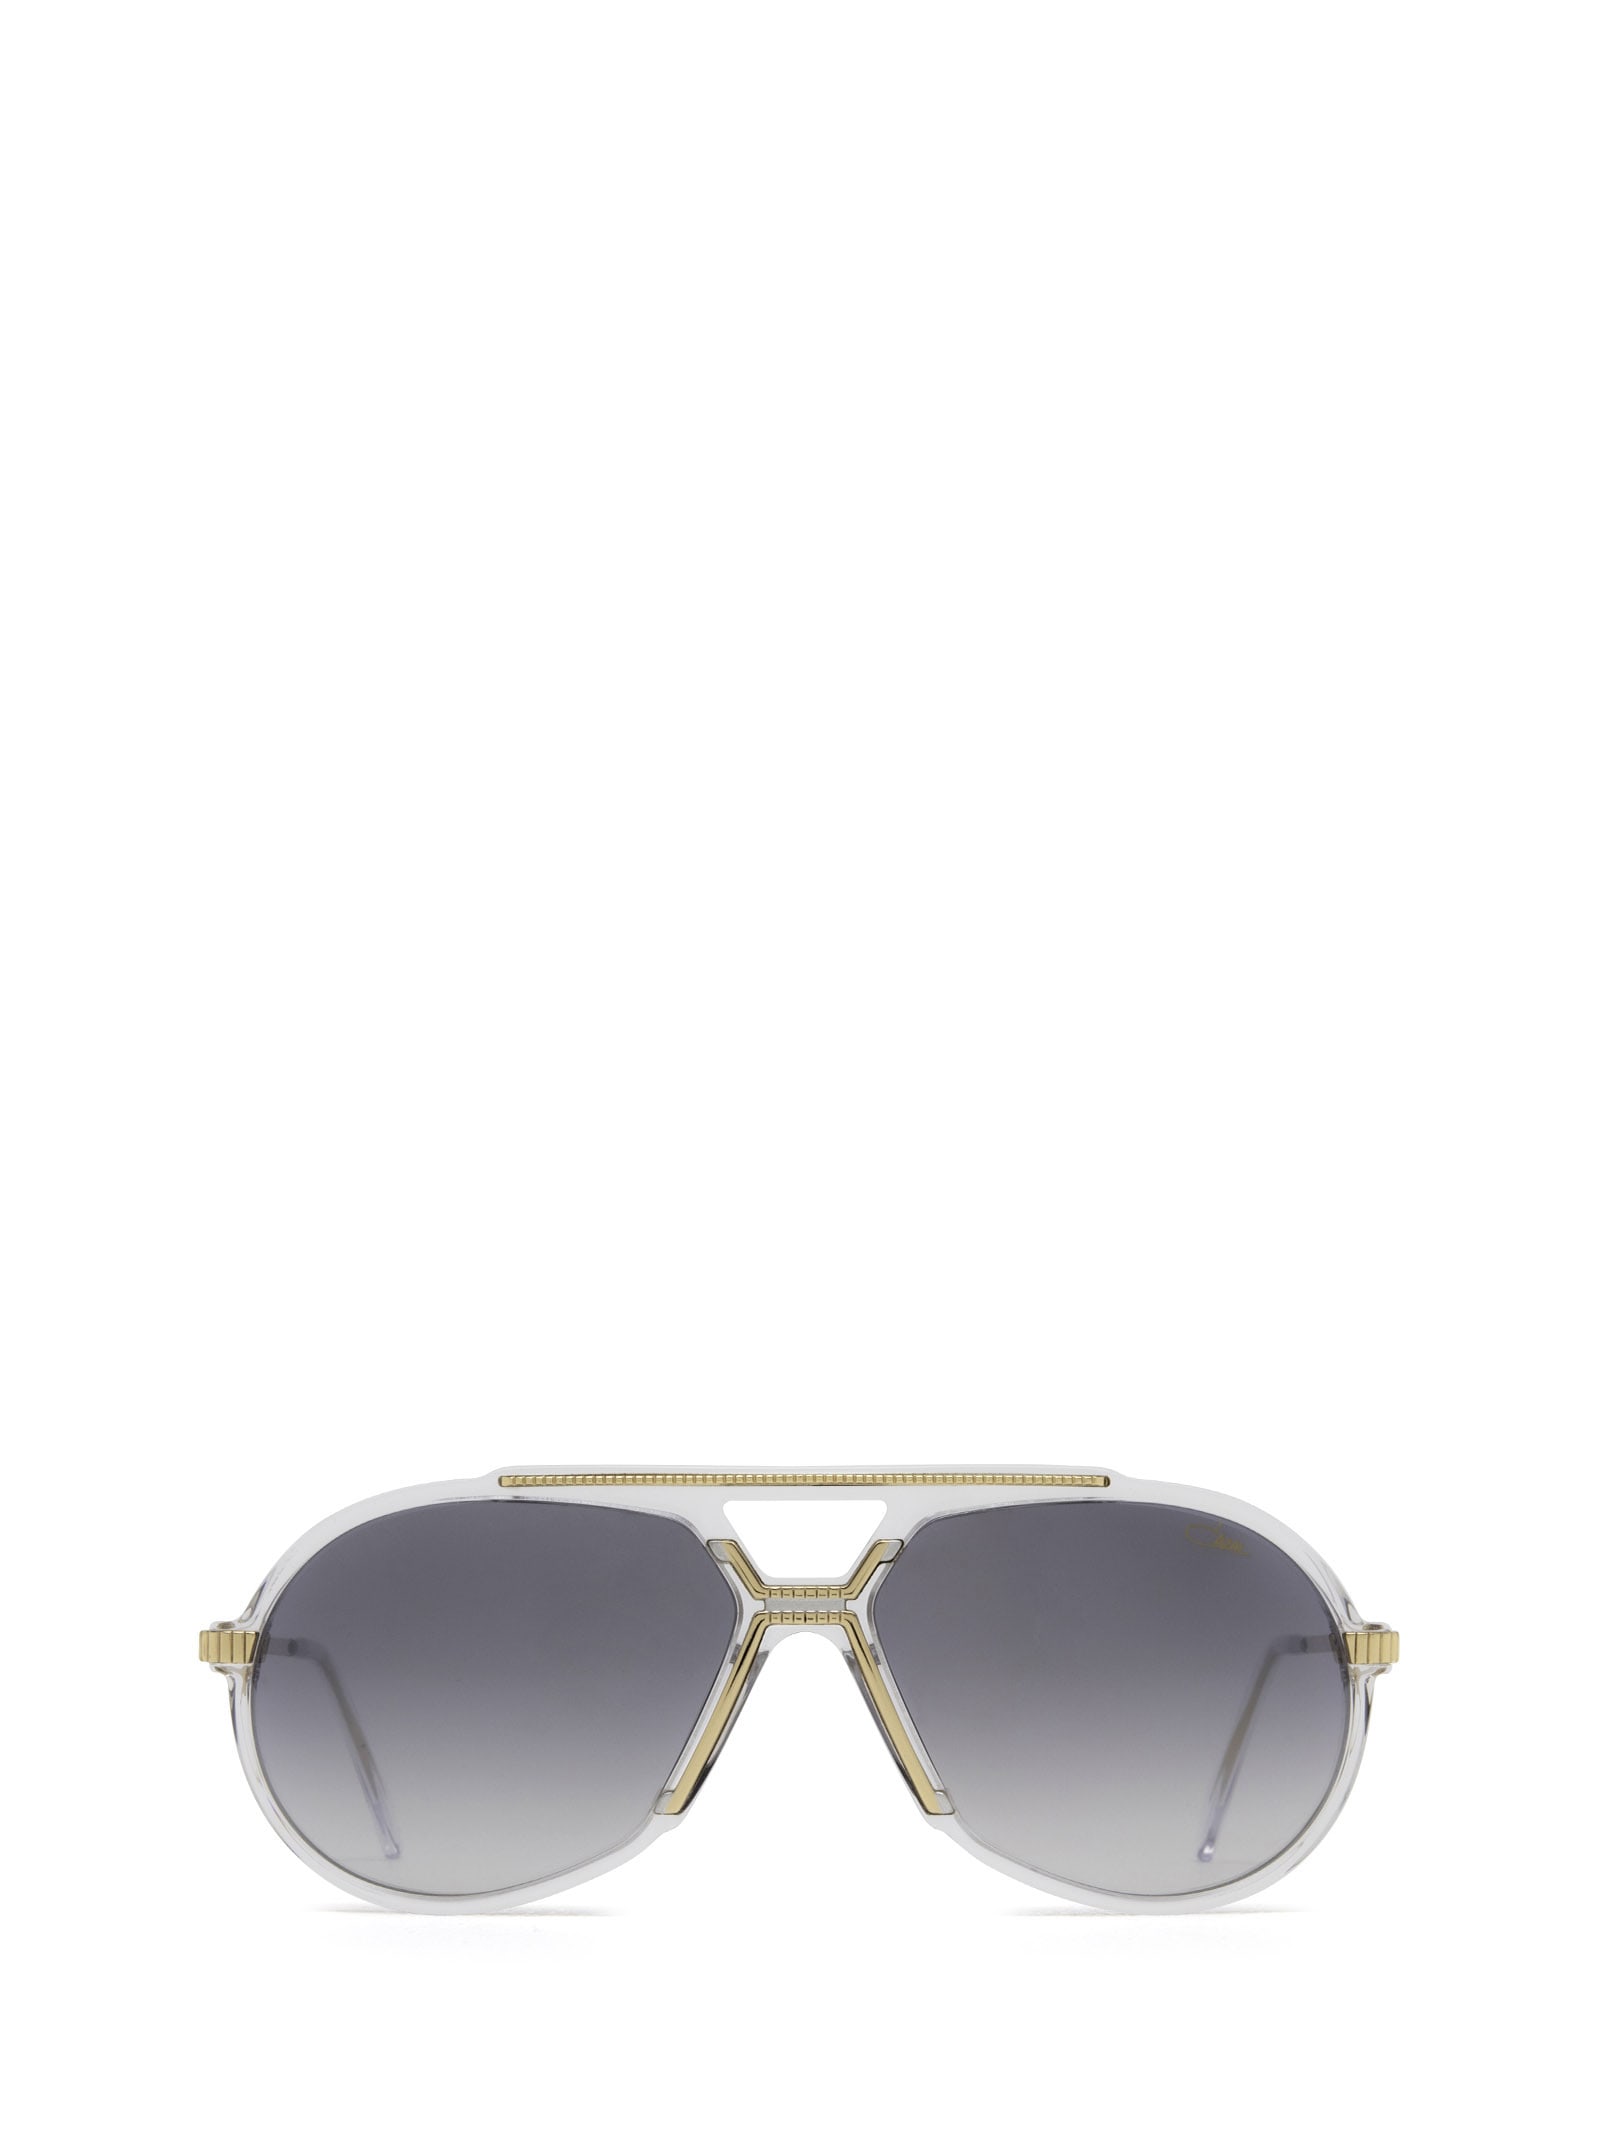 Cazal 888 Crystal - Bicolour Sunglasses